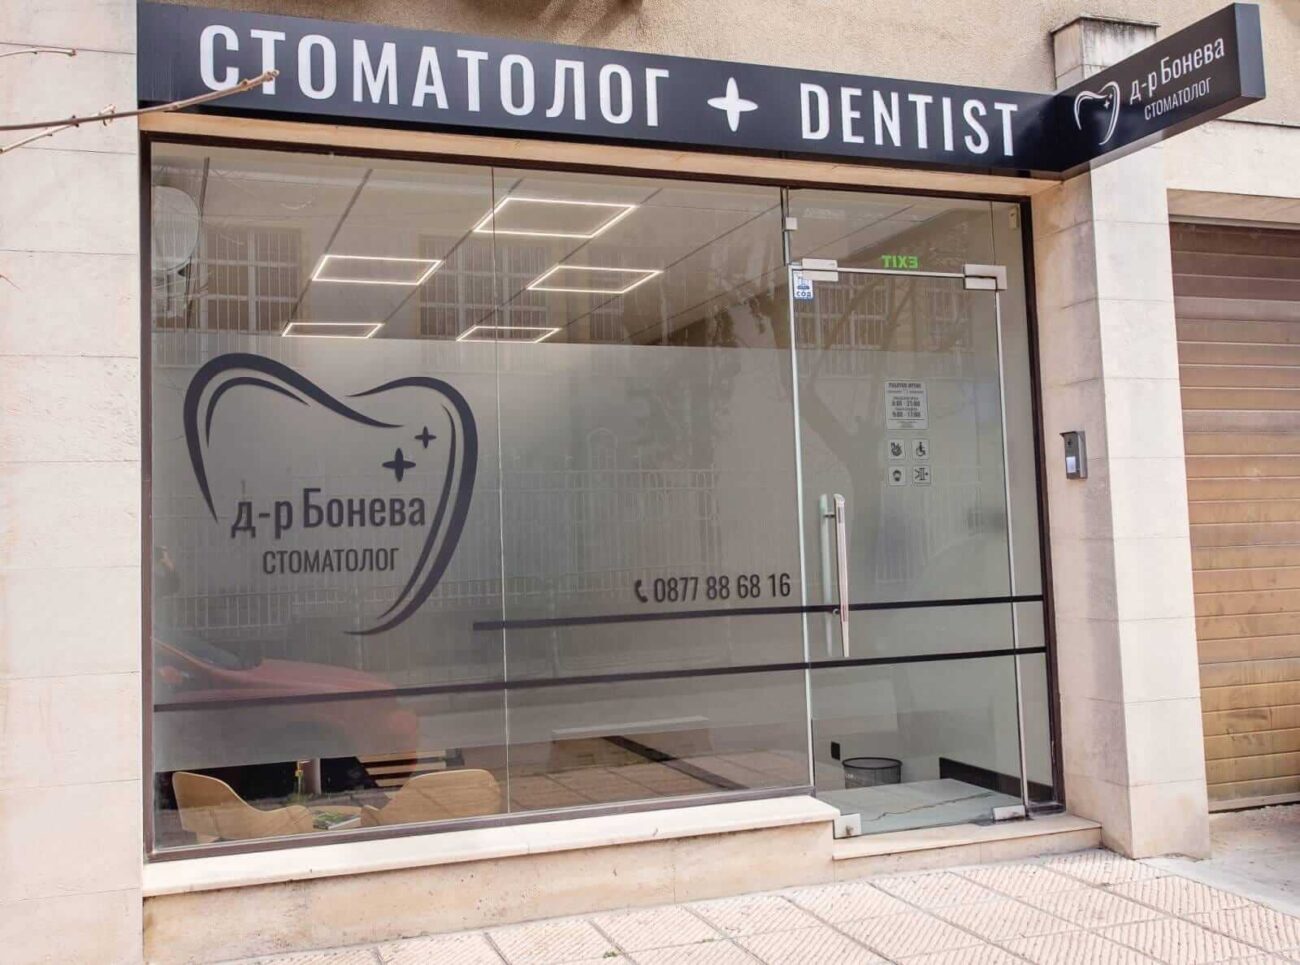 Дентален център д-р Бонева във Варна - качество без компромиси в стоматологията